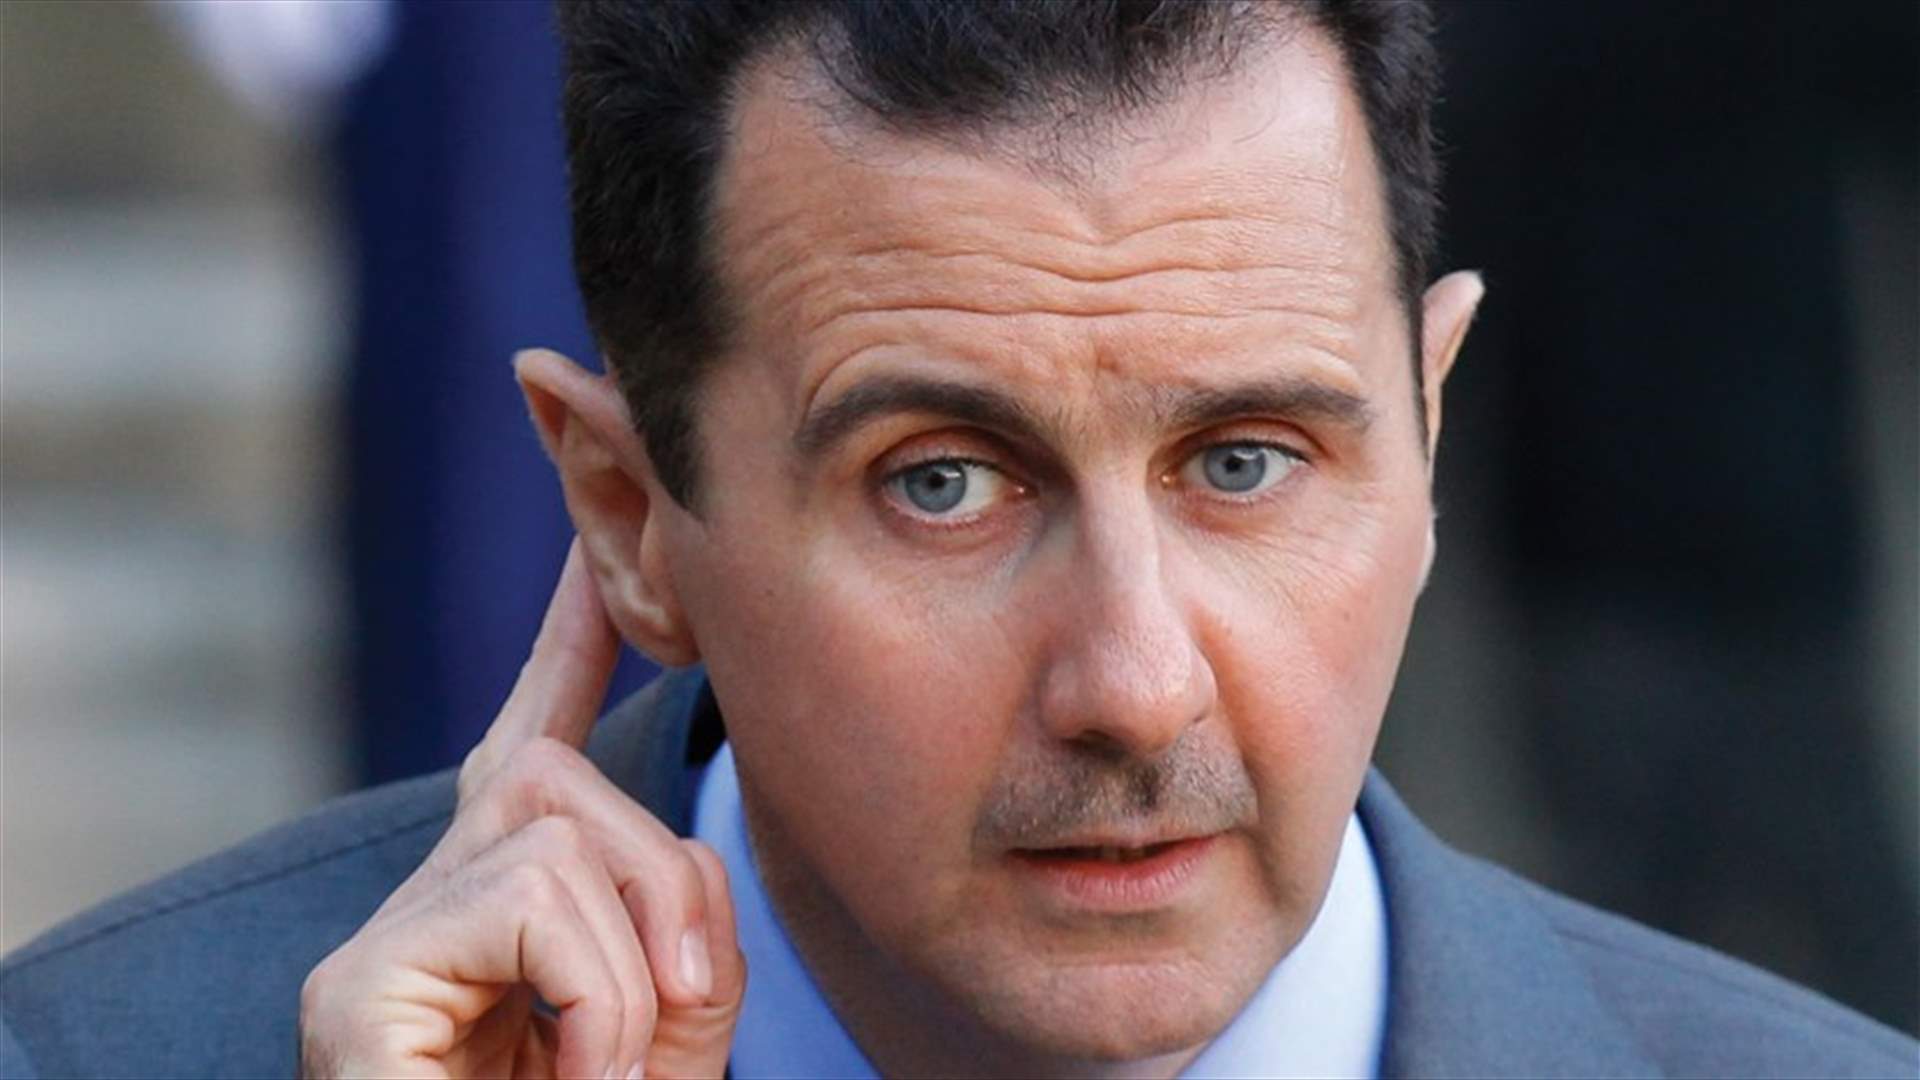 بالفيديو - الأسد يحرّك يده ويخيّب آمال أعدائه